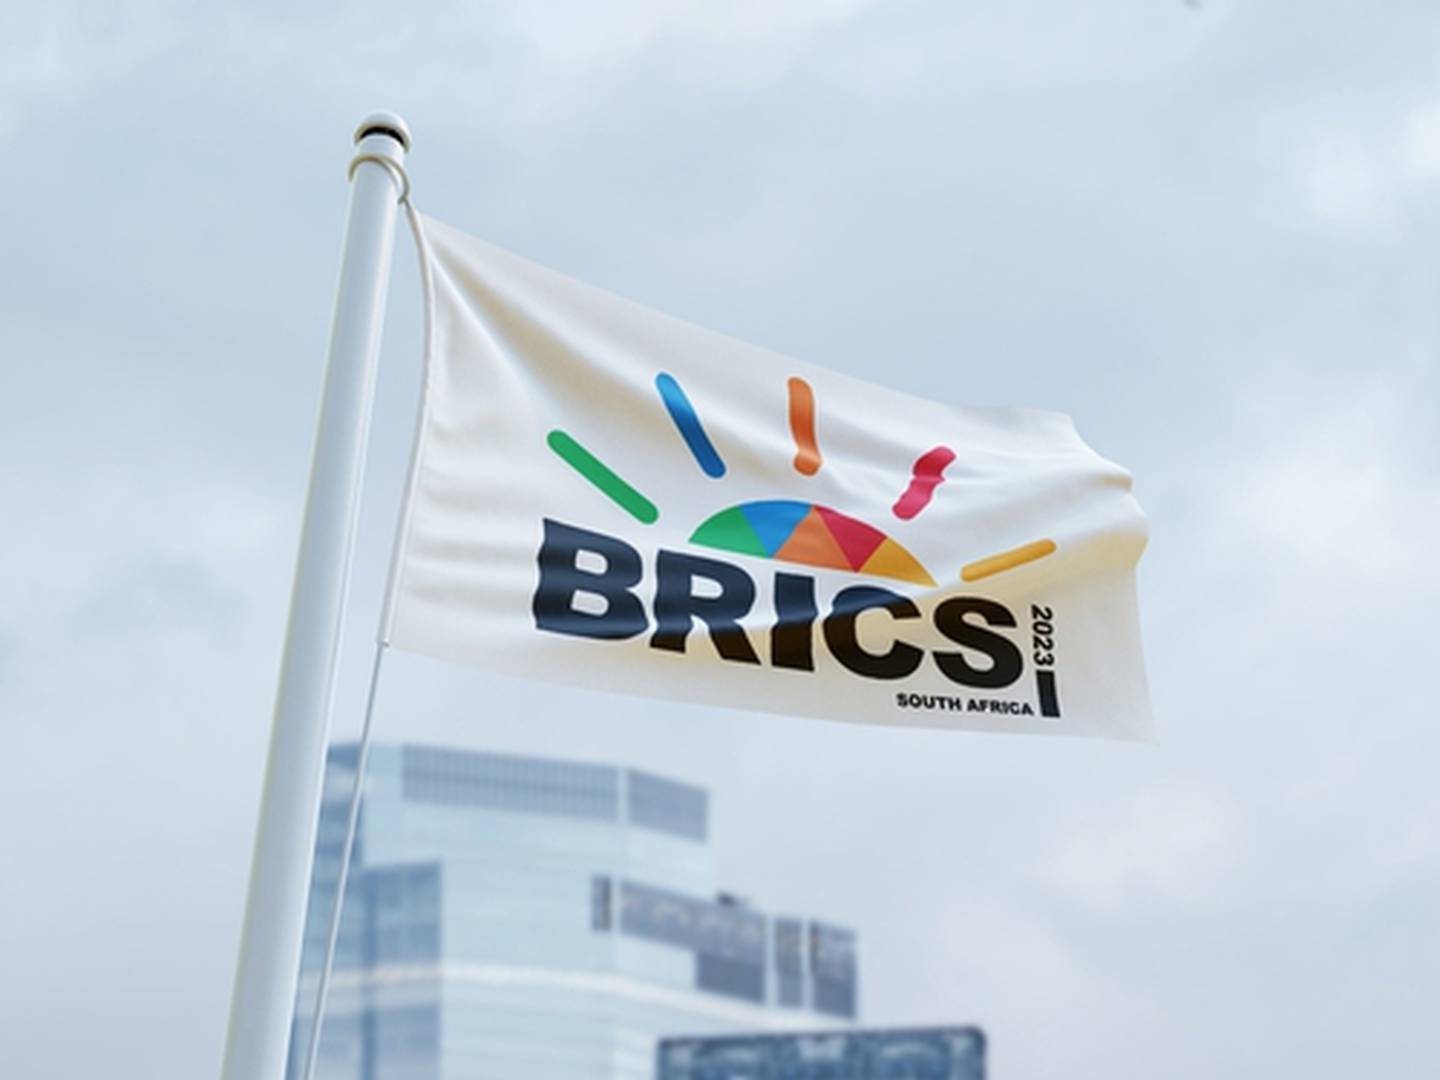 Los países Brics originales son Brasil, Rusia, la India, China y Sudáfrica. Las siglas fueron acuñadas por el economista británico Jim O'Neill en el 2001.